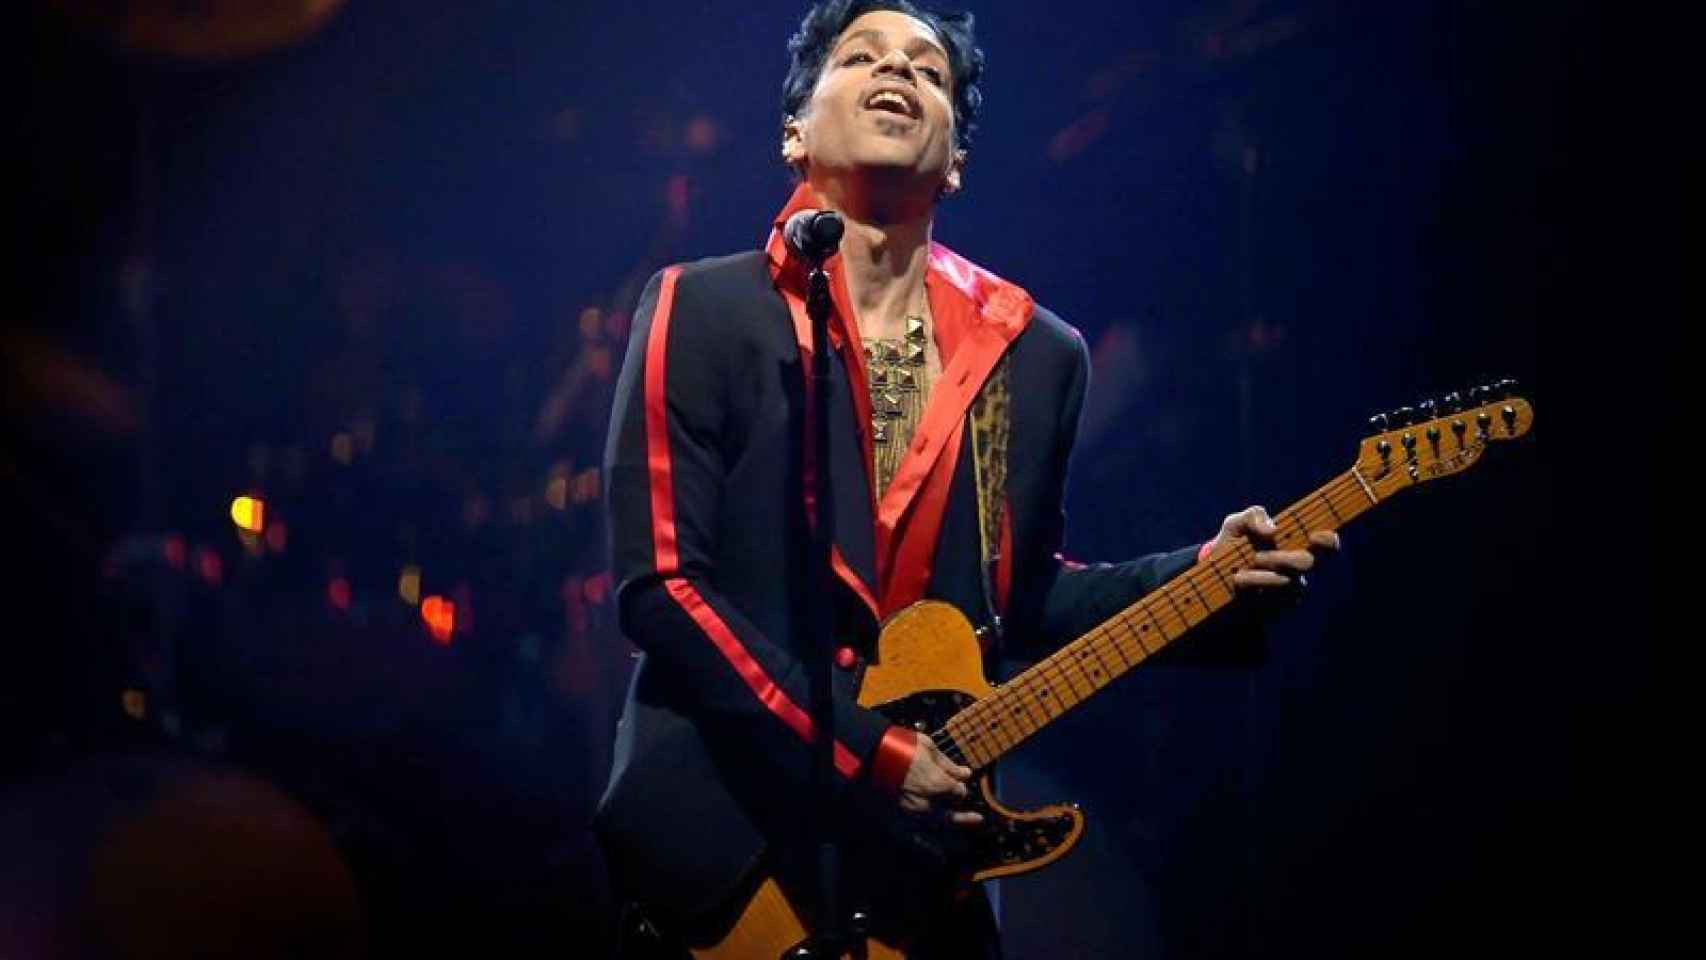 Prince en plena actuación.